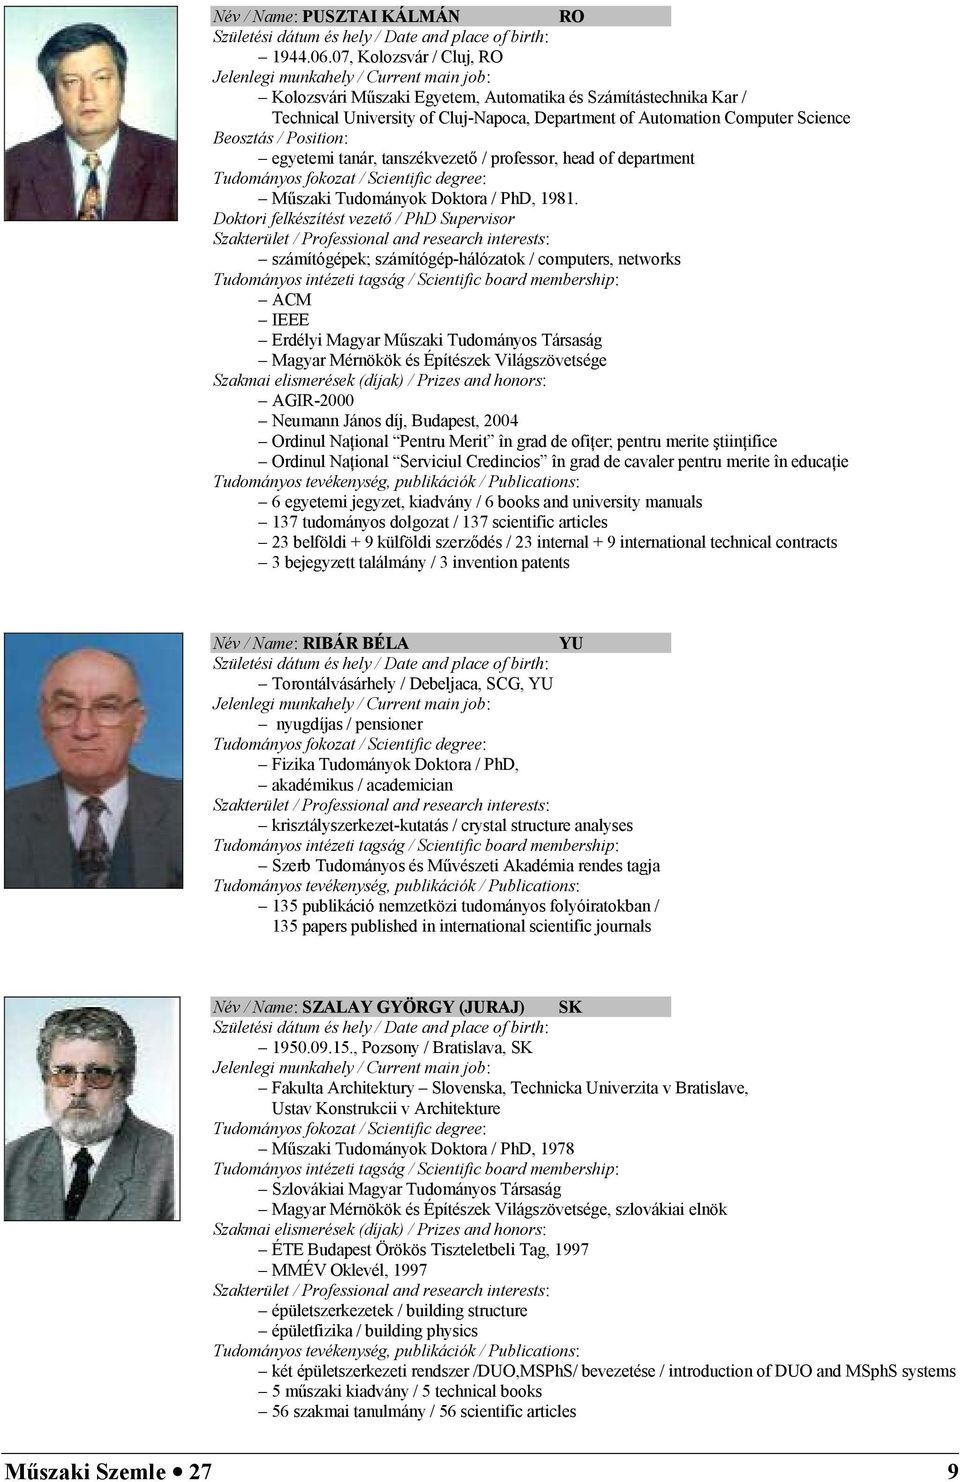 Computer Science Beosztás / Position: egyetemi tanár, tanszékvezet / professor, head of department Tudományos fokozat / Scientific degree: M7szaki Tudományok Doktora / PhD, 1981.